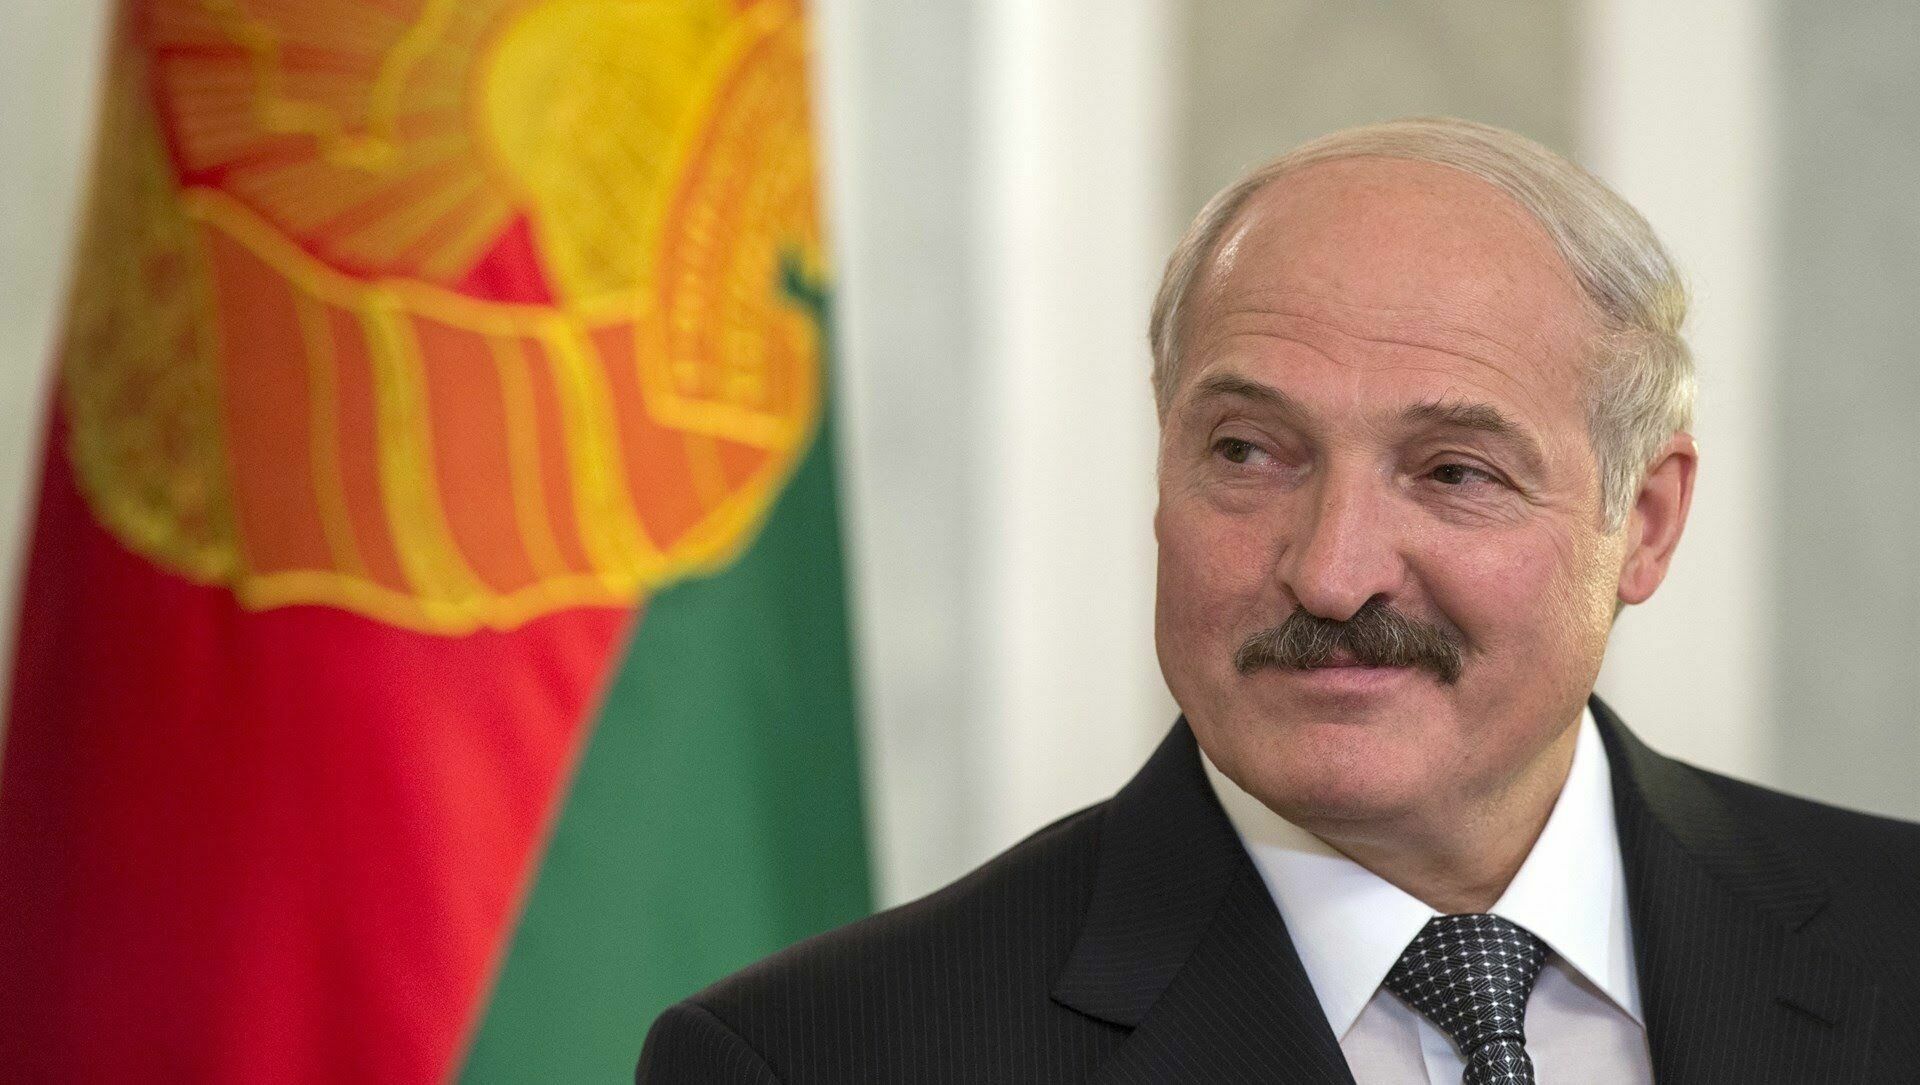 Лукашенко нужны женщины в парламенте, чтобы мужики "не дурили"